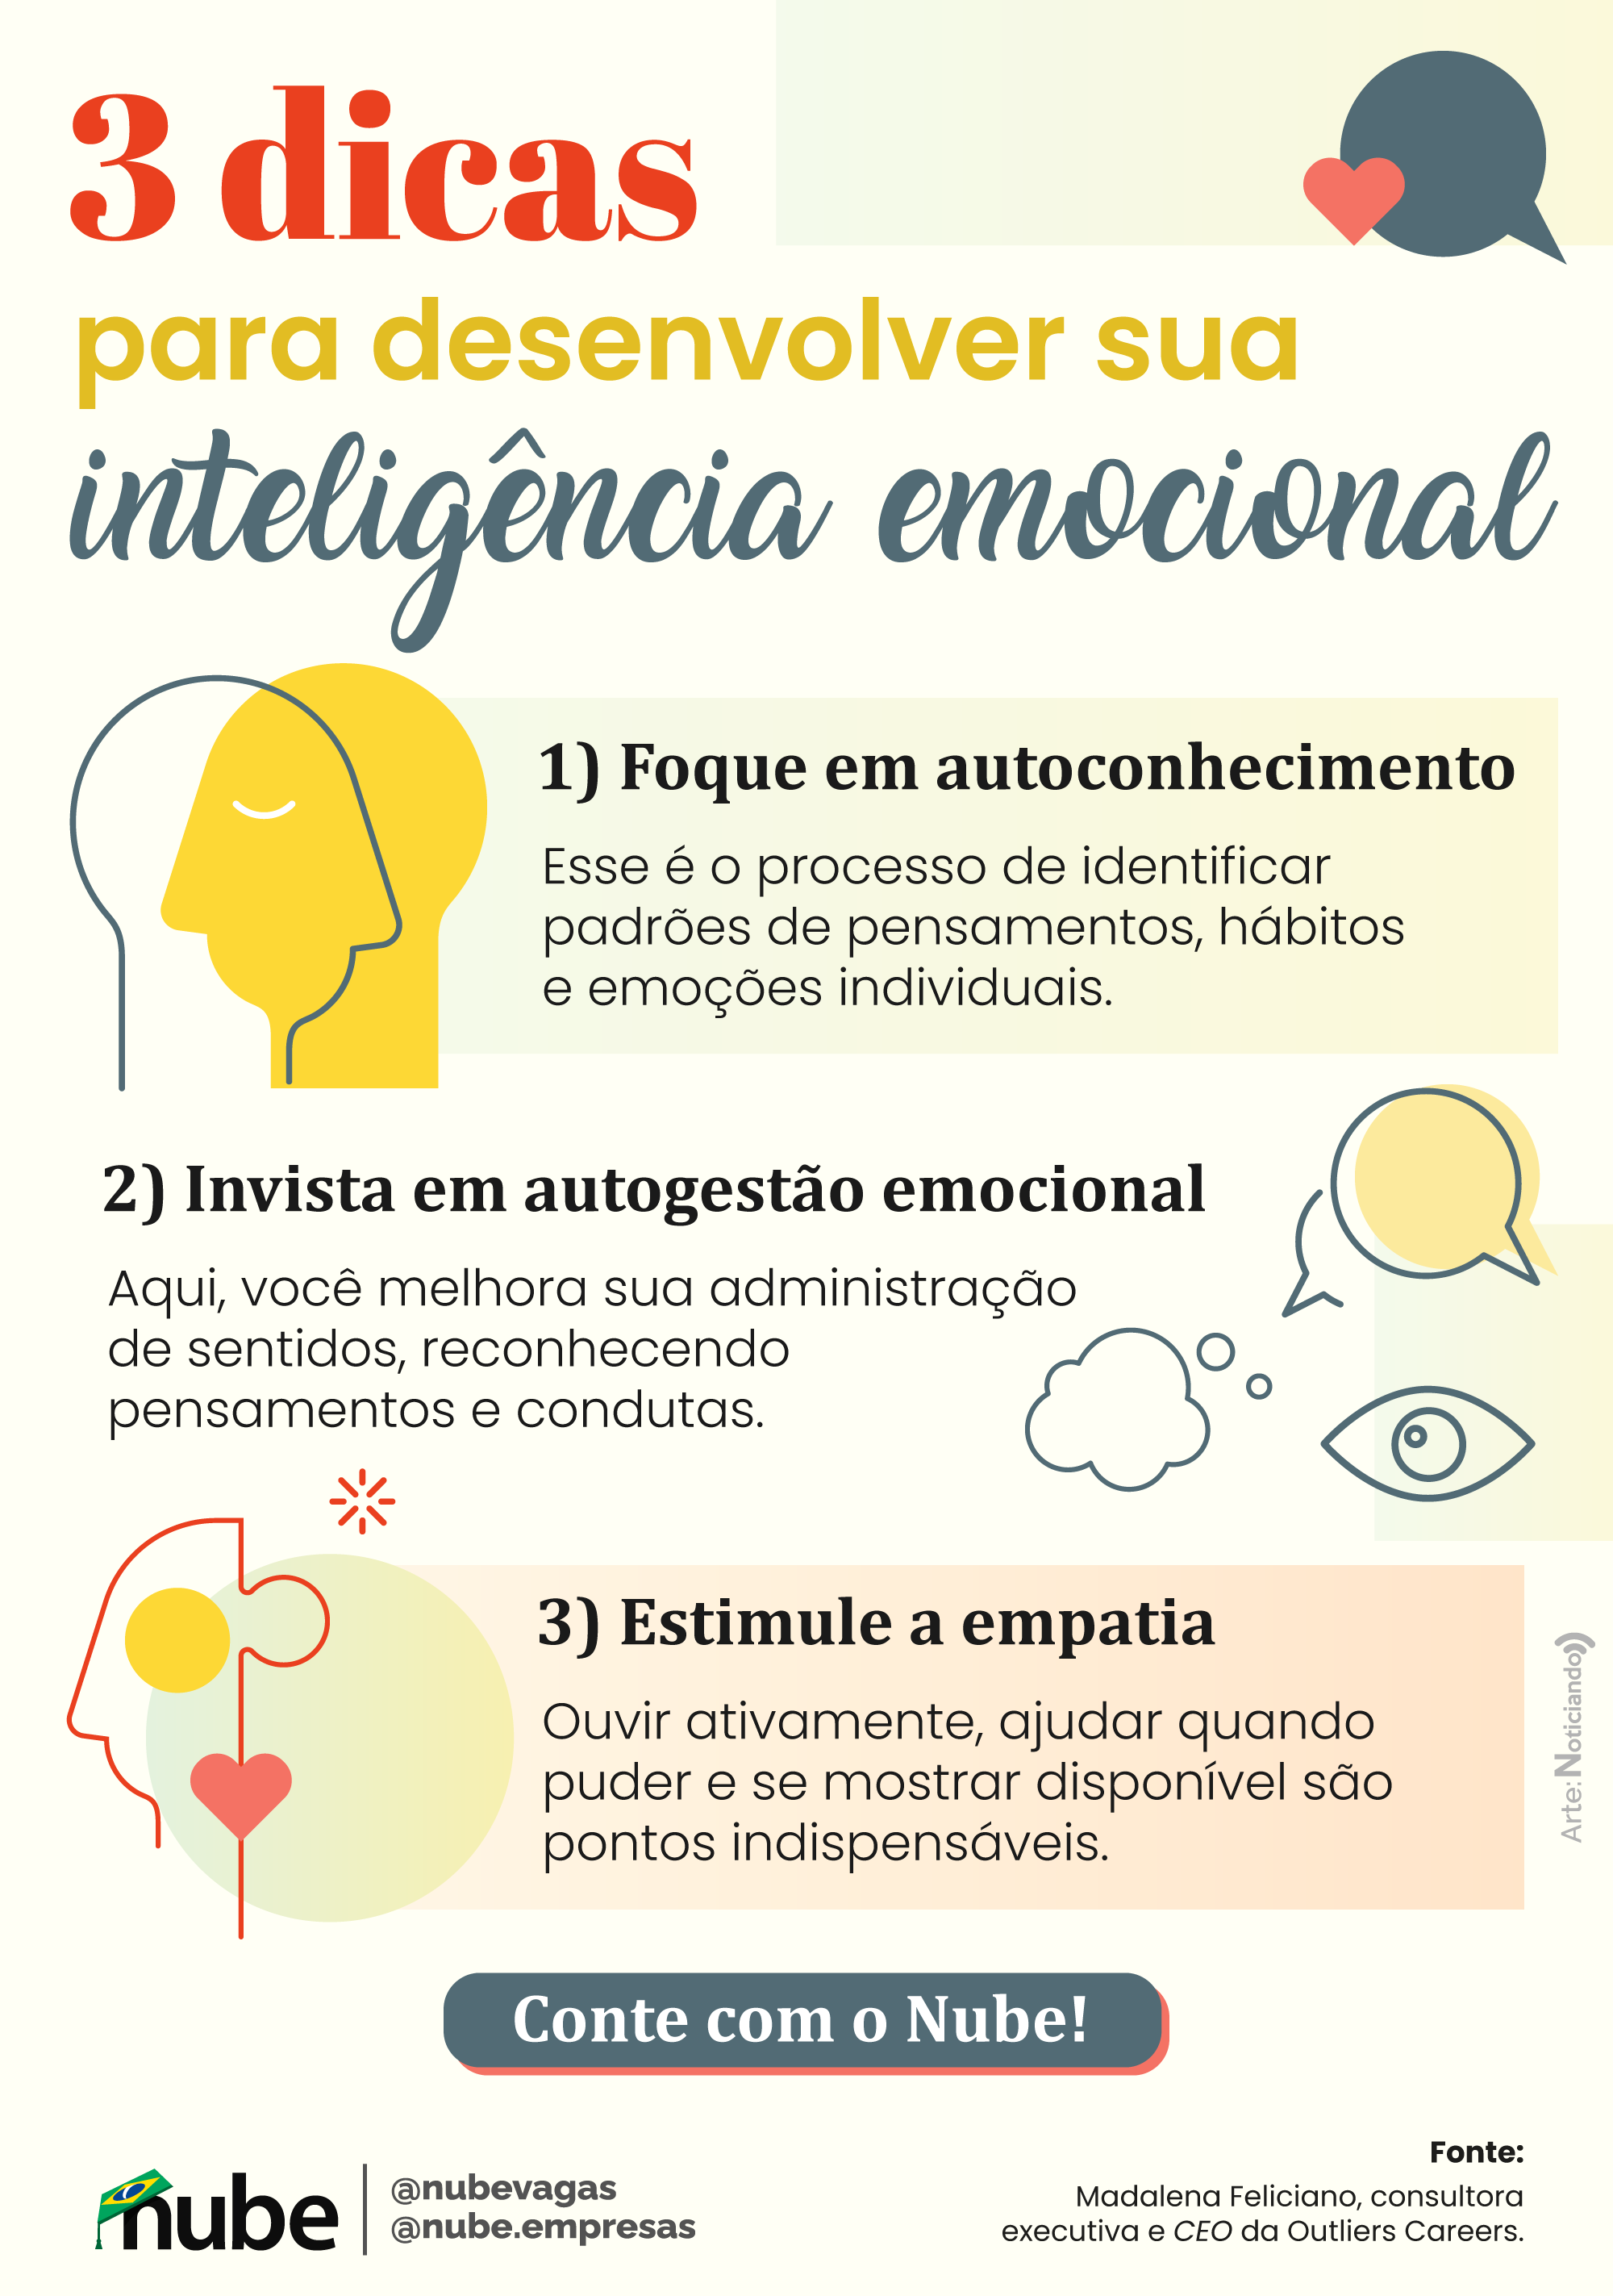 infográfico contendo três dicas para aprimorar a inteligência emocional